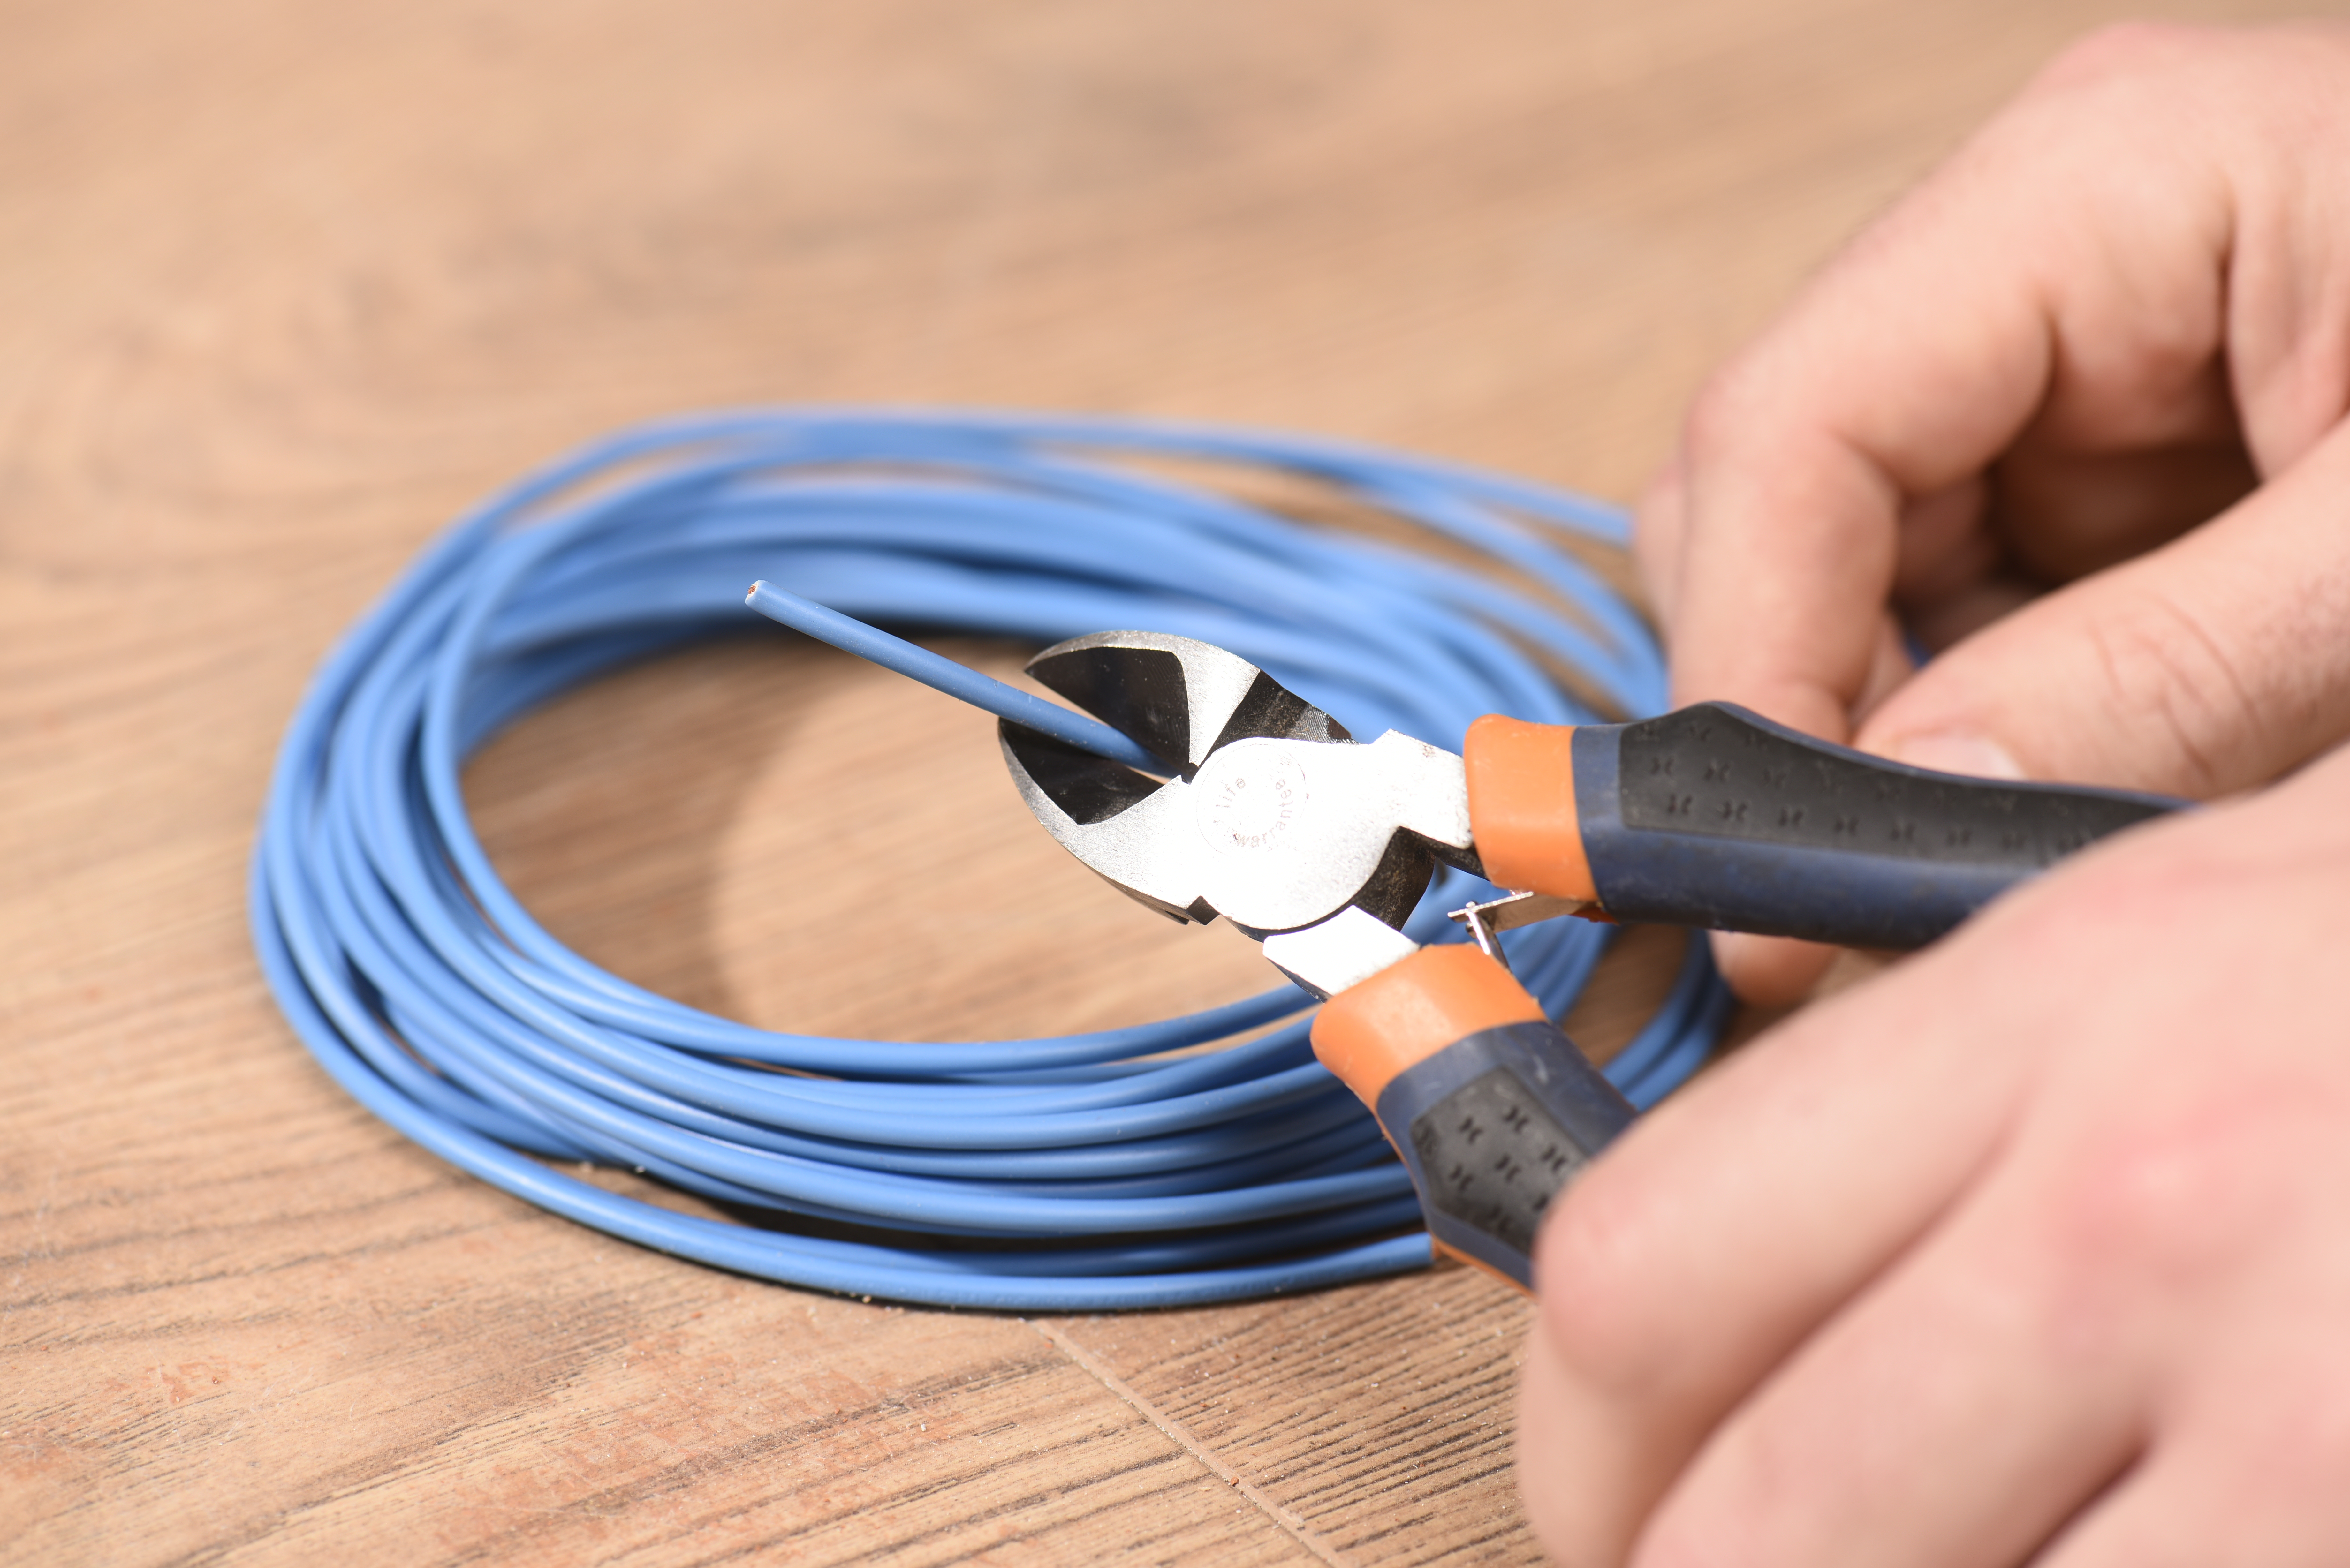 Canaleta para cables: cables protegidos y ordenados